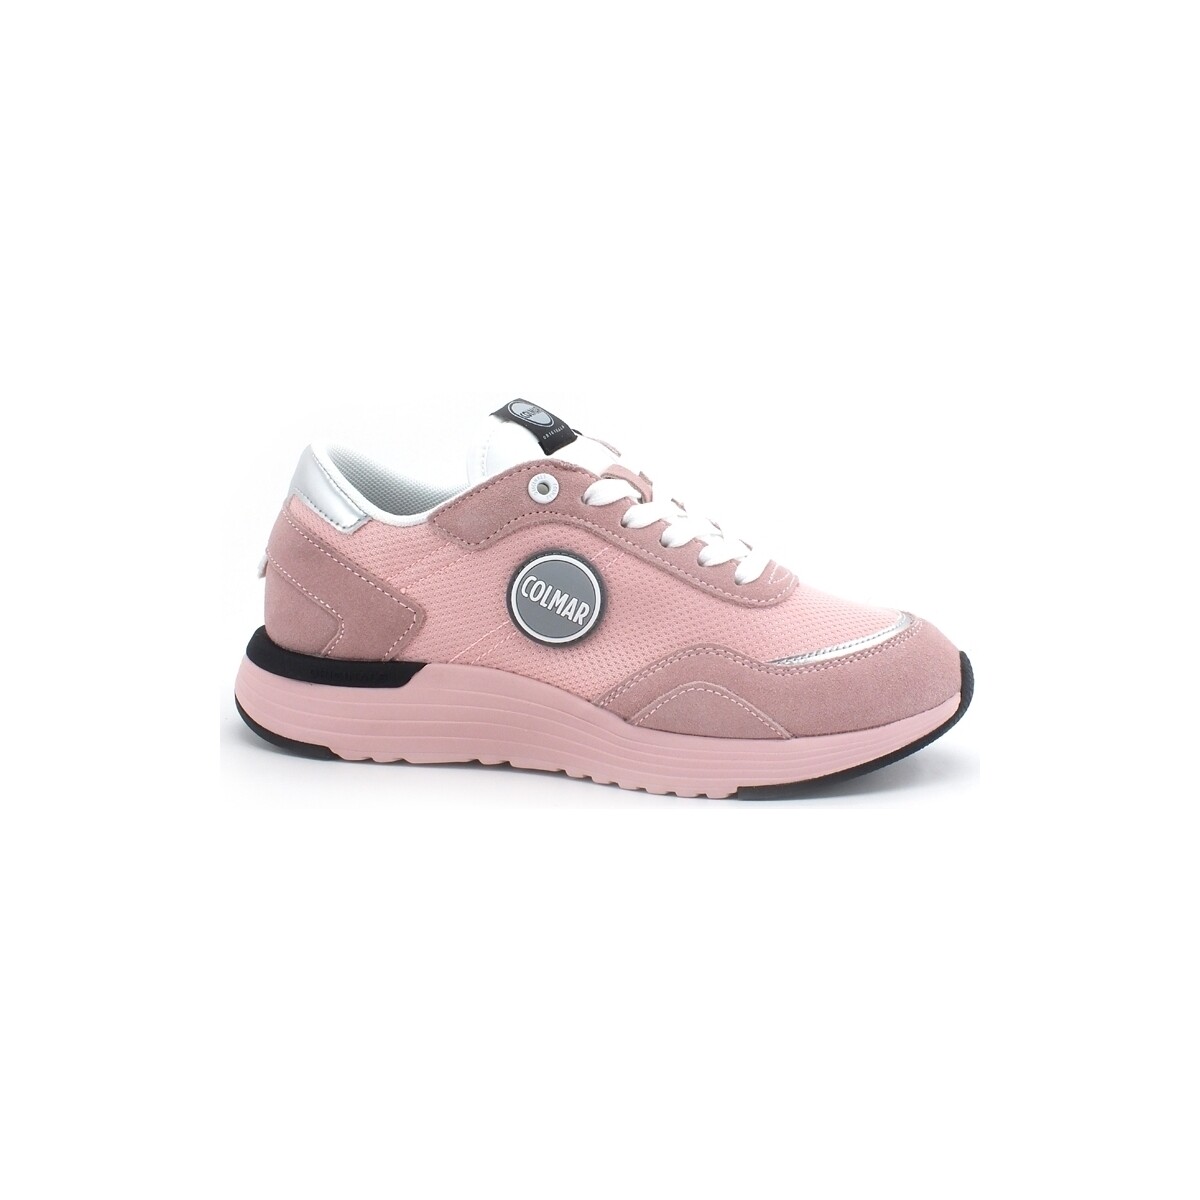 Chaussures Femme Bottes Colmar Darren Bold 106 Sneaker Running Light Pink DARRENBOLD106 Rose